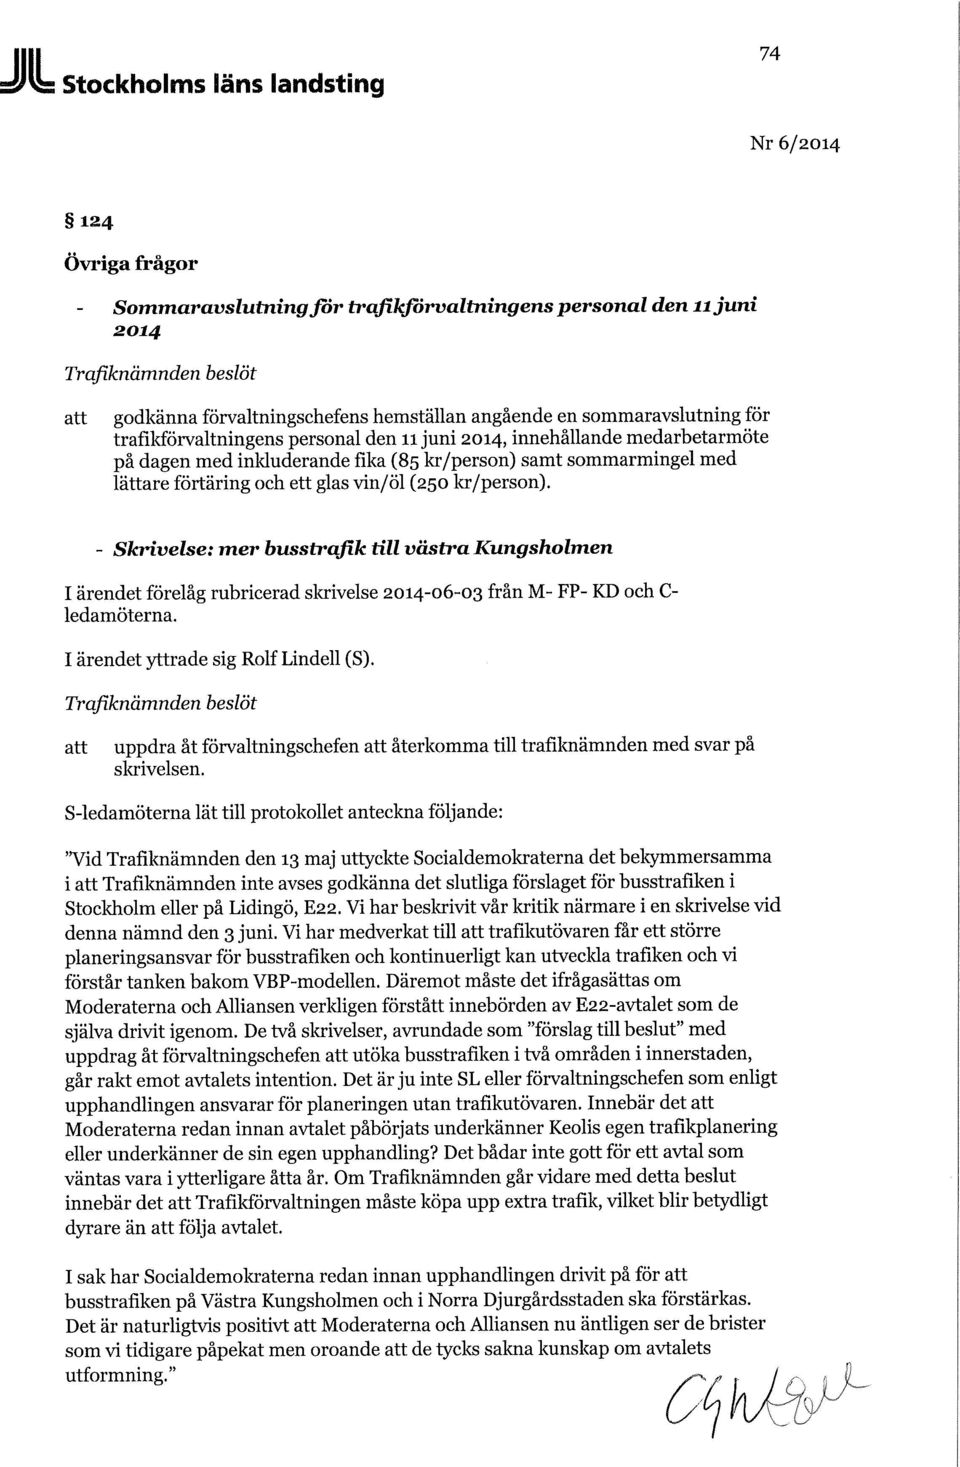 - Skrivelse: mer busstrafik till västra Kungsholmen I ärendet förelåg rubricerad skrivelse från M- FP- KD och C- ledamöterna. I ärendet yttrade sig Rolf Lindell (S).